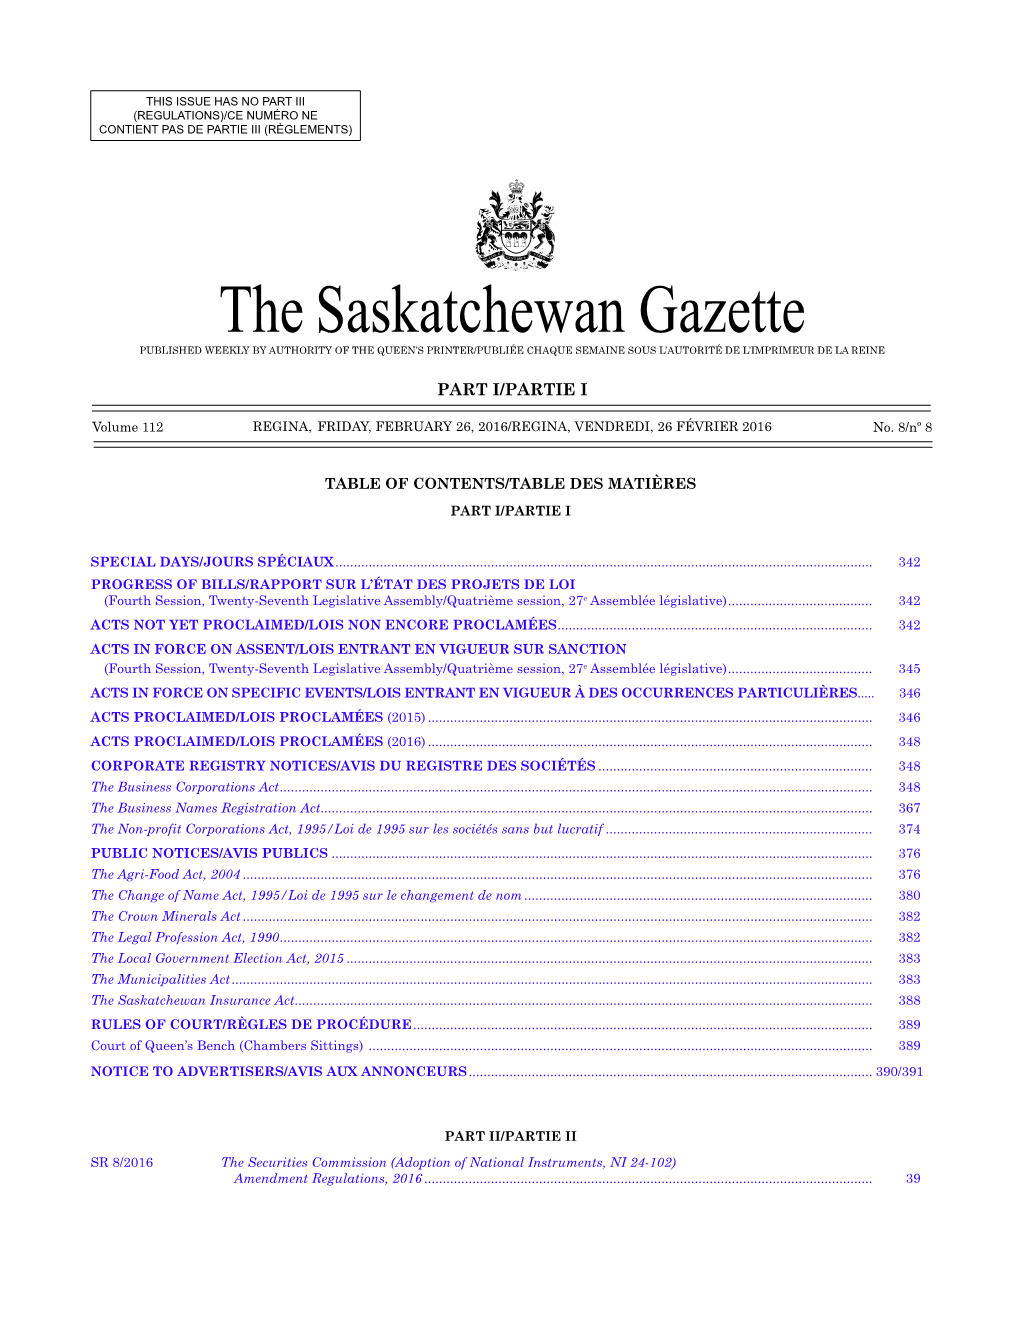 The Saskatchewan Gazette, February 26, 2016 341 (Regulations)/Ce Numéro Ne Contient Pas De Partie Iii (Règlements)